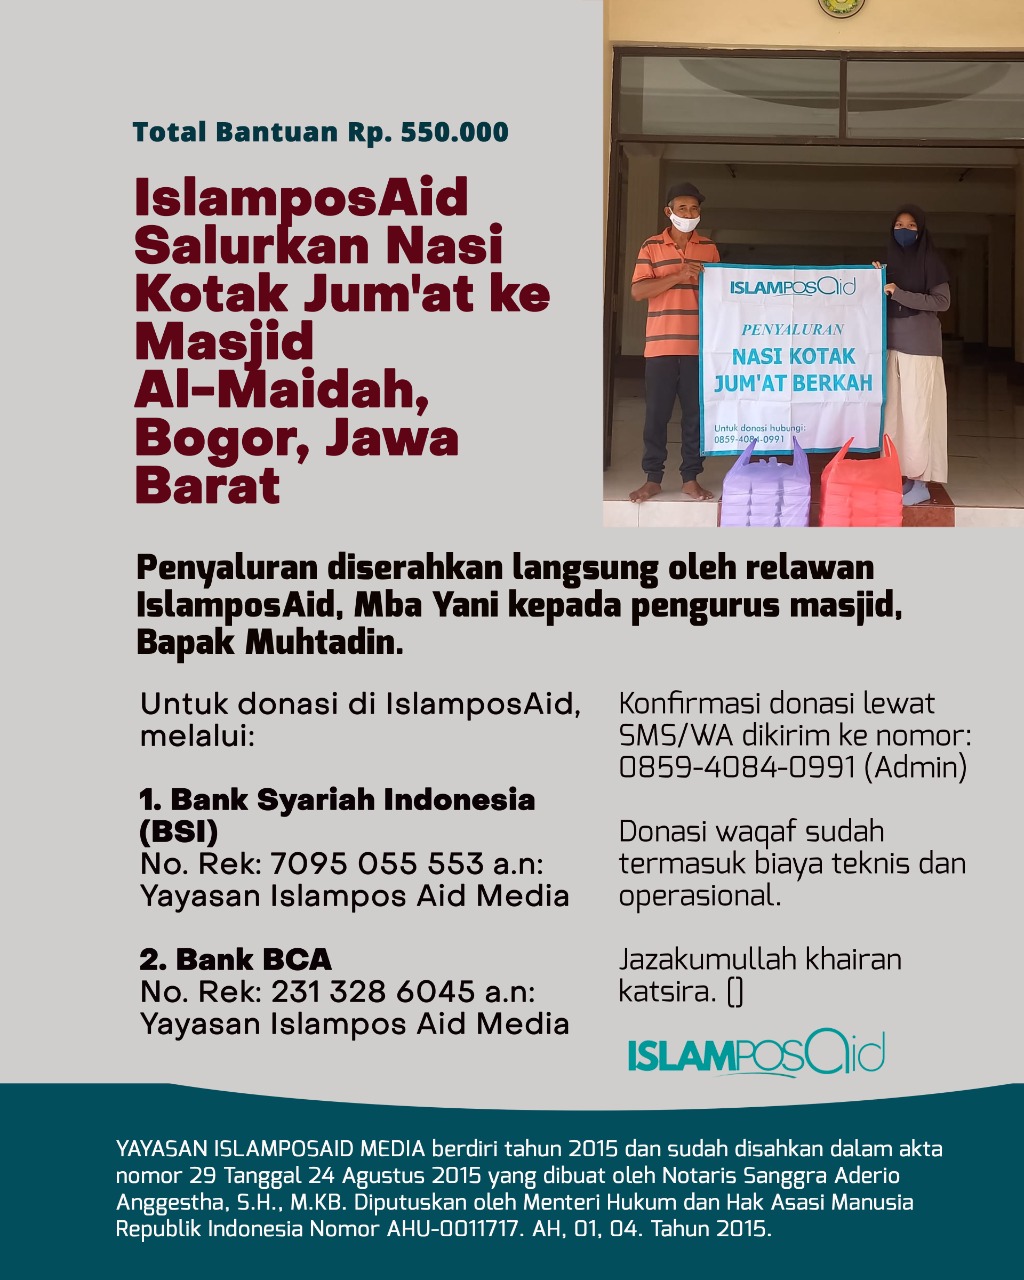 IslamposAid Salurkan Nasi Kotak Jum'at Ke Masjid Al-Maidah, Bogor, Senilai Rp550,000 1 IslamposAid